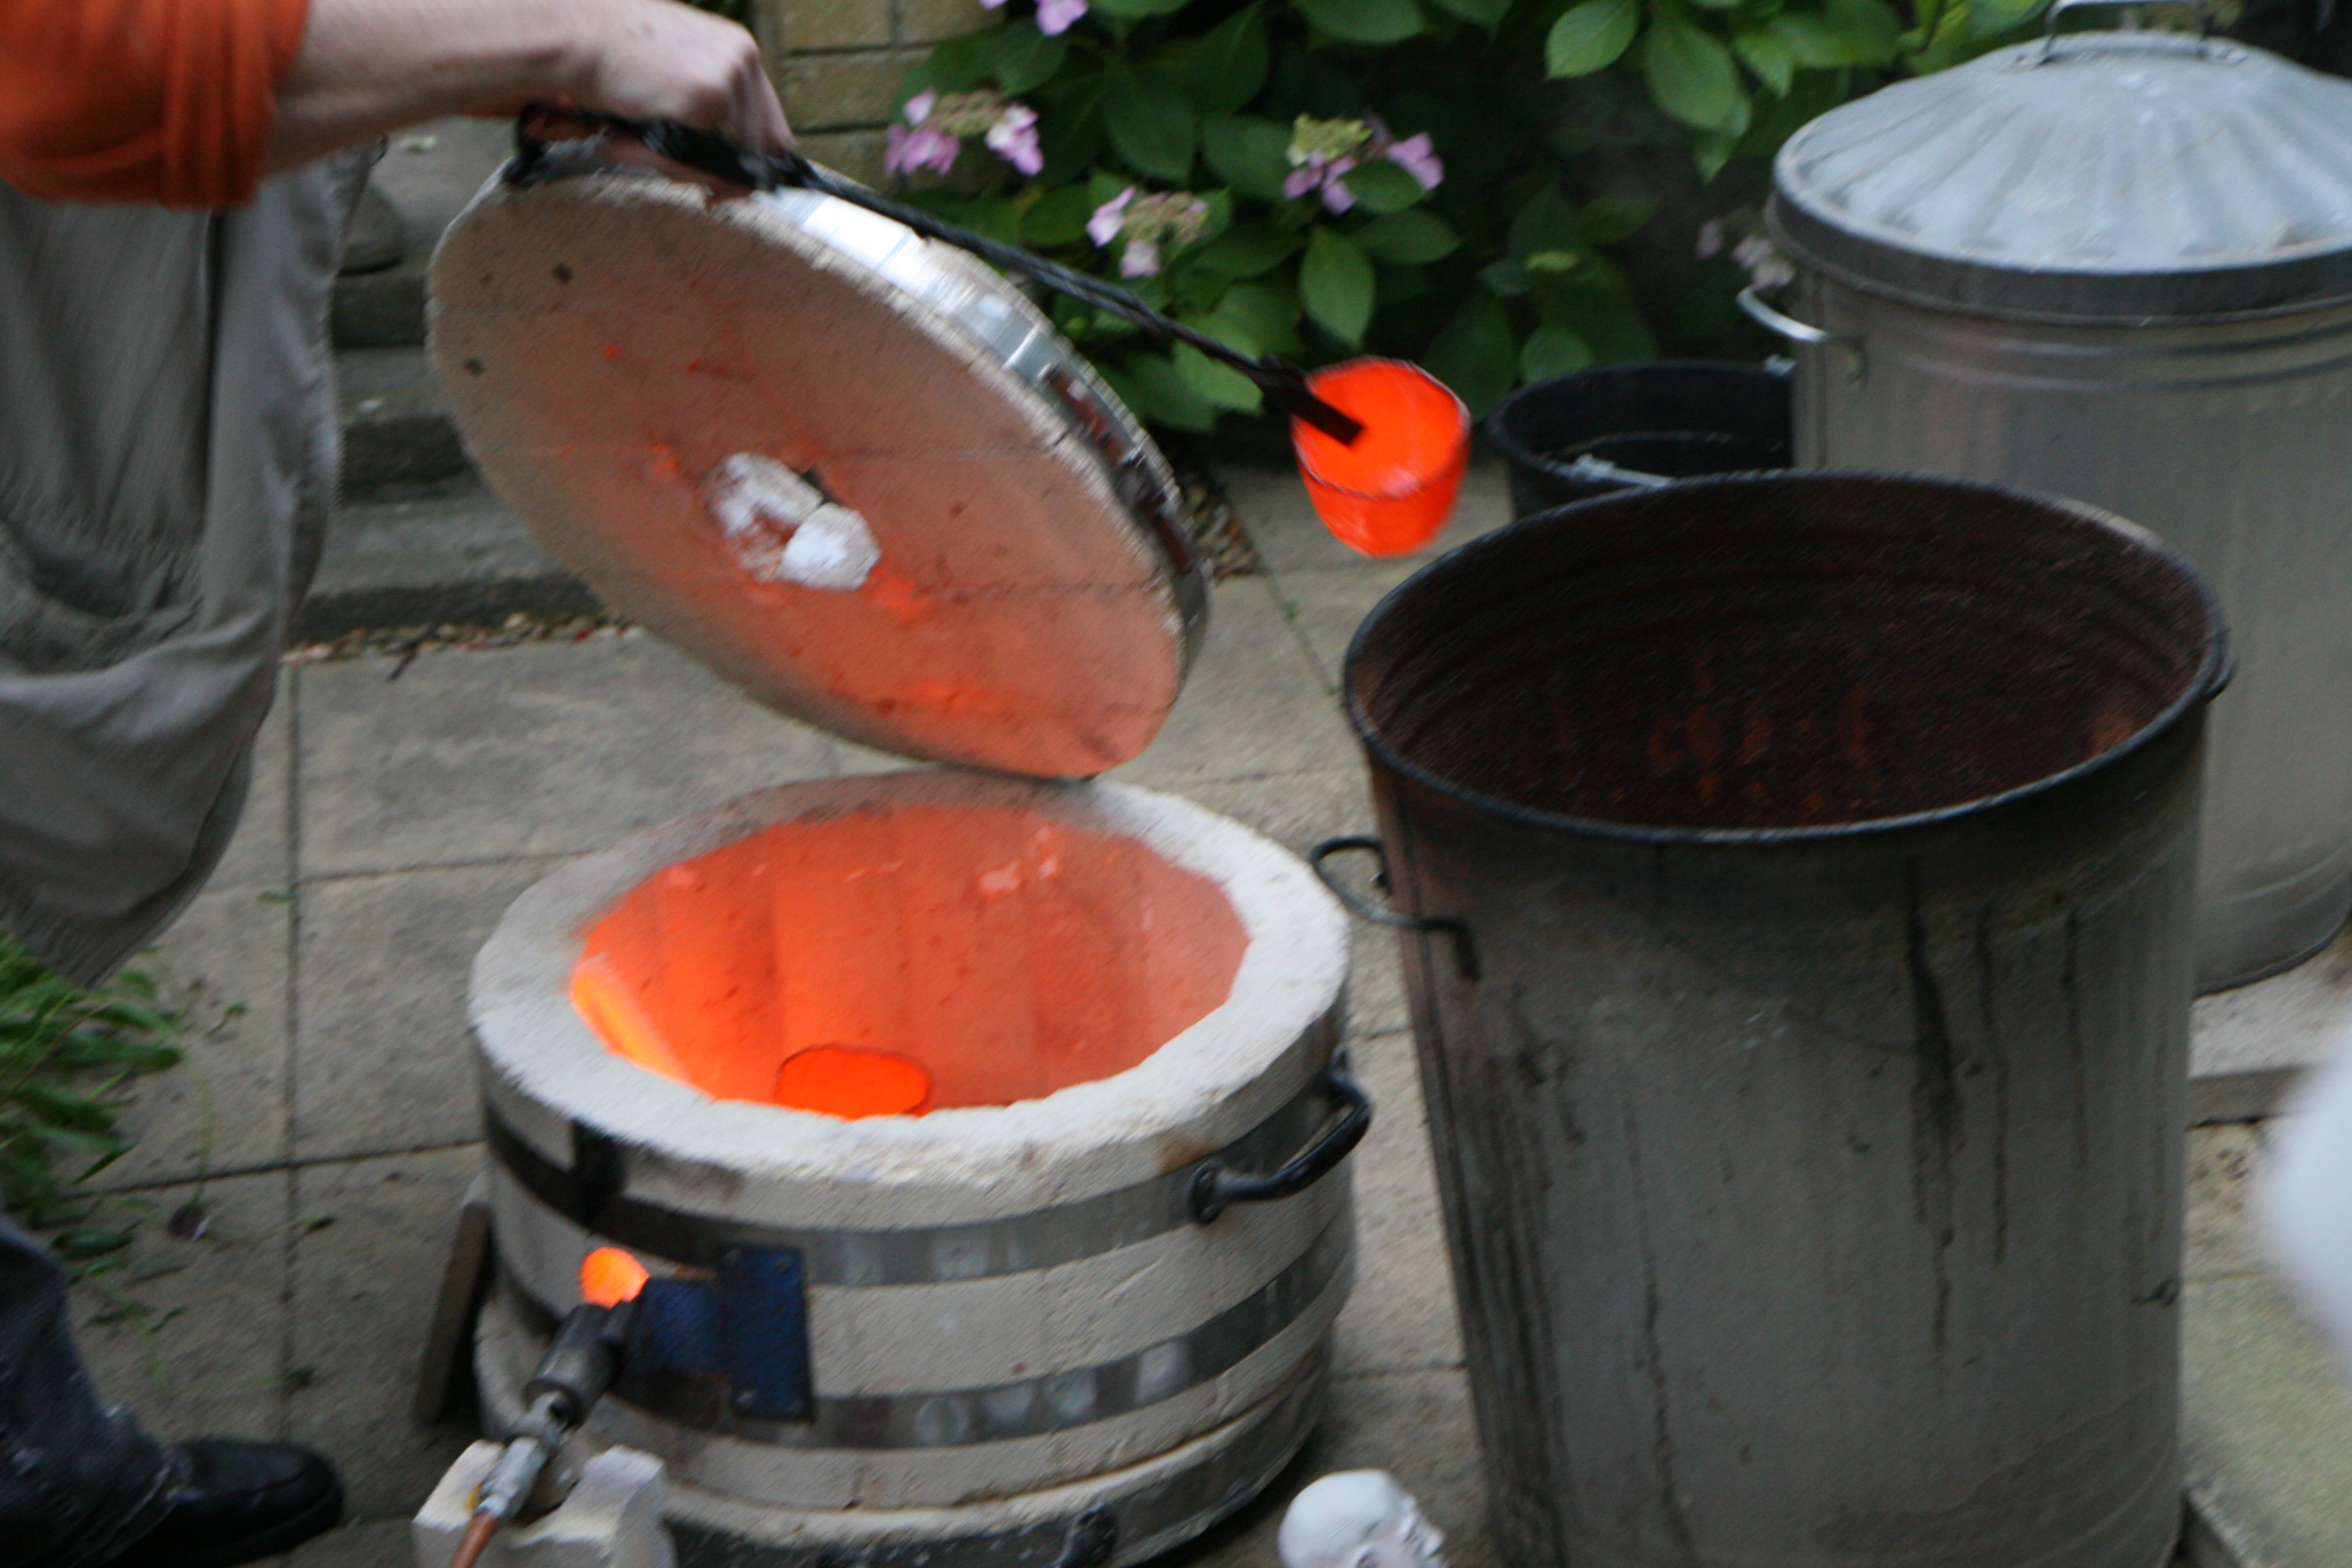 Raku Firing - removing pot when glowing hot